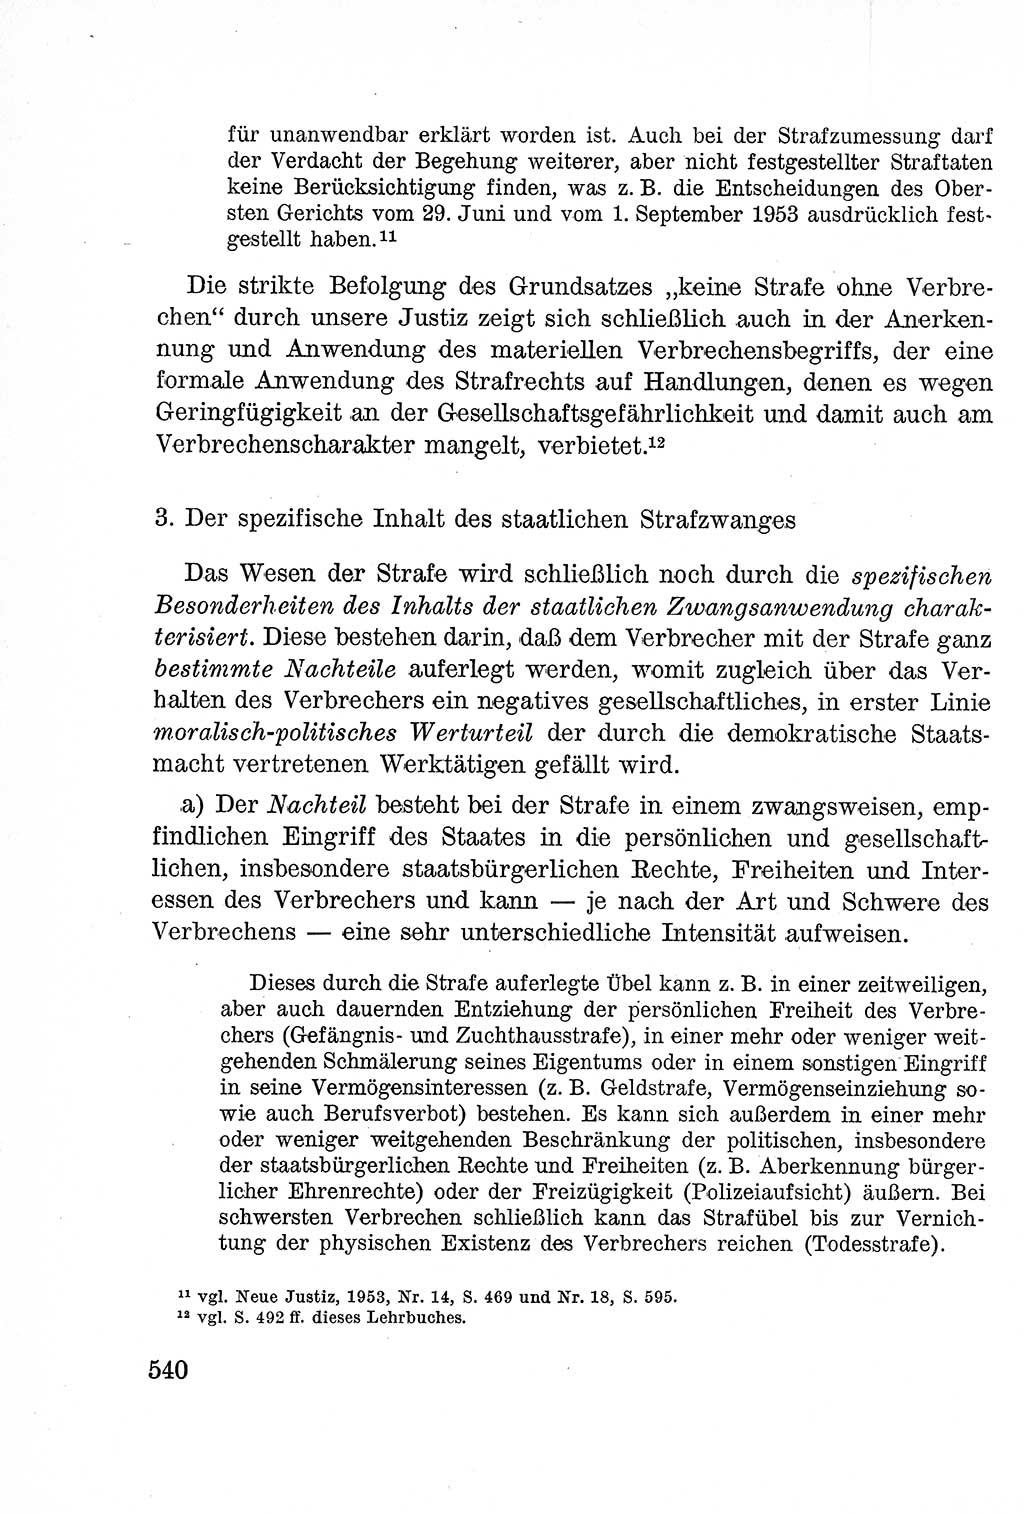 Lehrbuch des Strafrechts der Deutschen Demokratischen Republik (DDR), Allgemeiner Teil 1957, Seite 540 (Lb. Strafr. DDR AT 1957, S. 540)